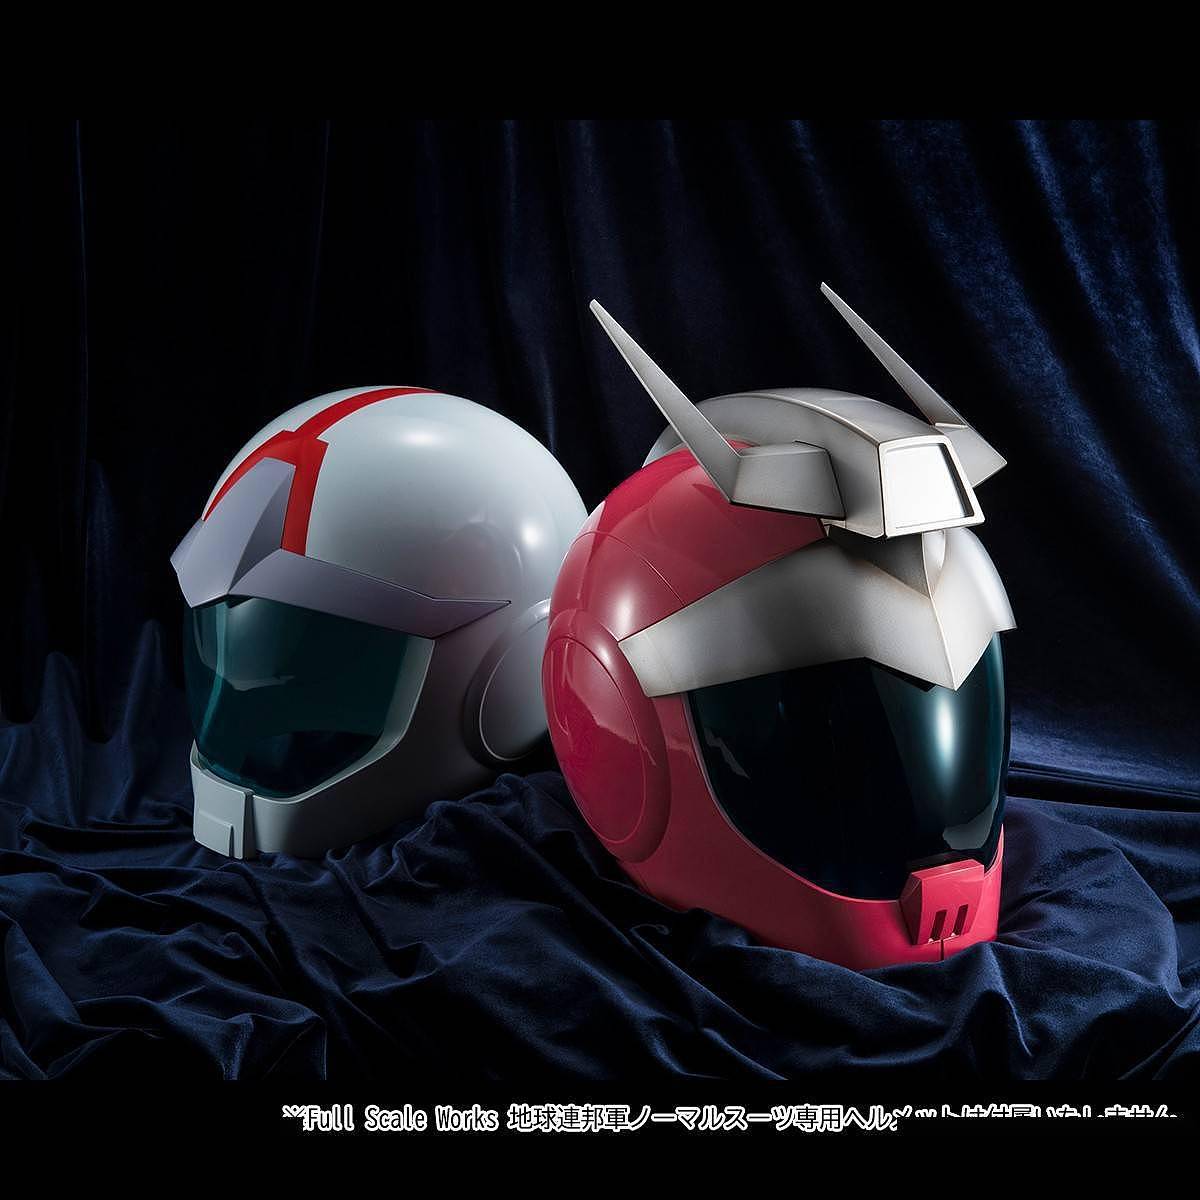 《高达》主题完整尺寸夏亚头盔公开 颜色略有差异 - 7